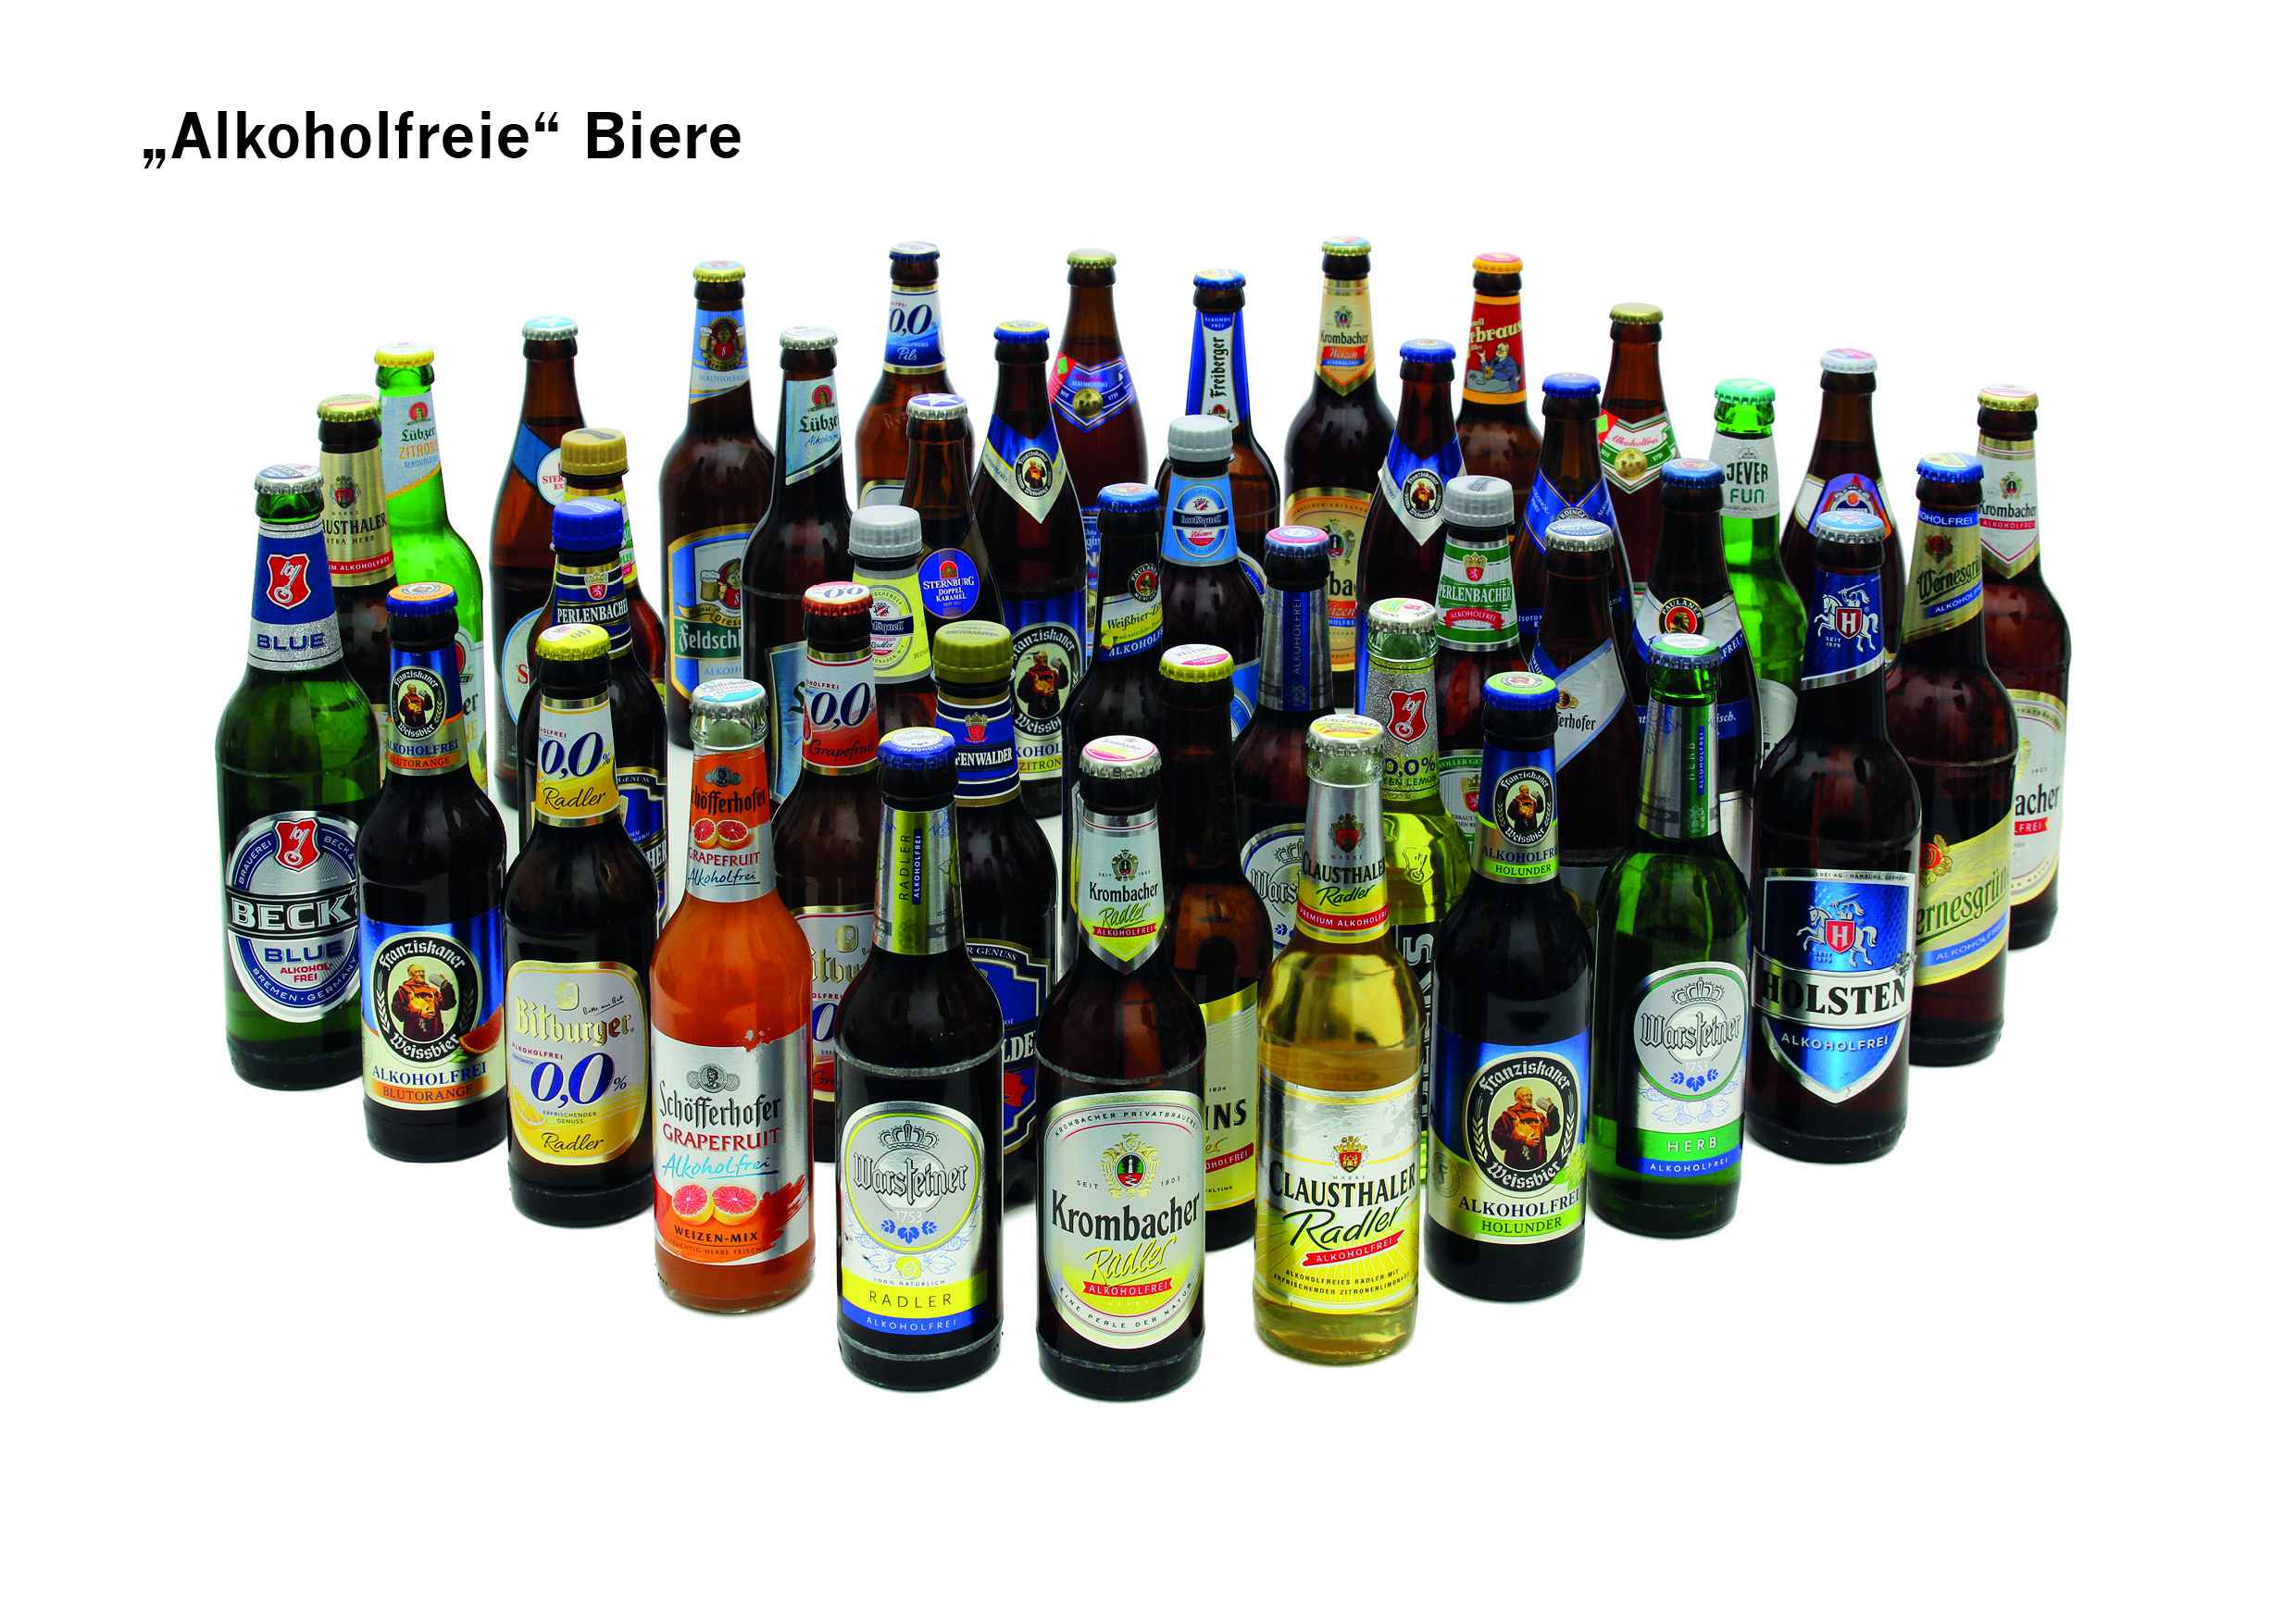 Umfrage belegt: Verbraucher fühlen sich durch alkohol„freie“ Biere getäuscht